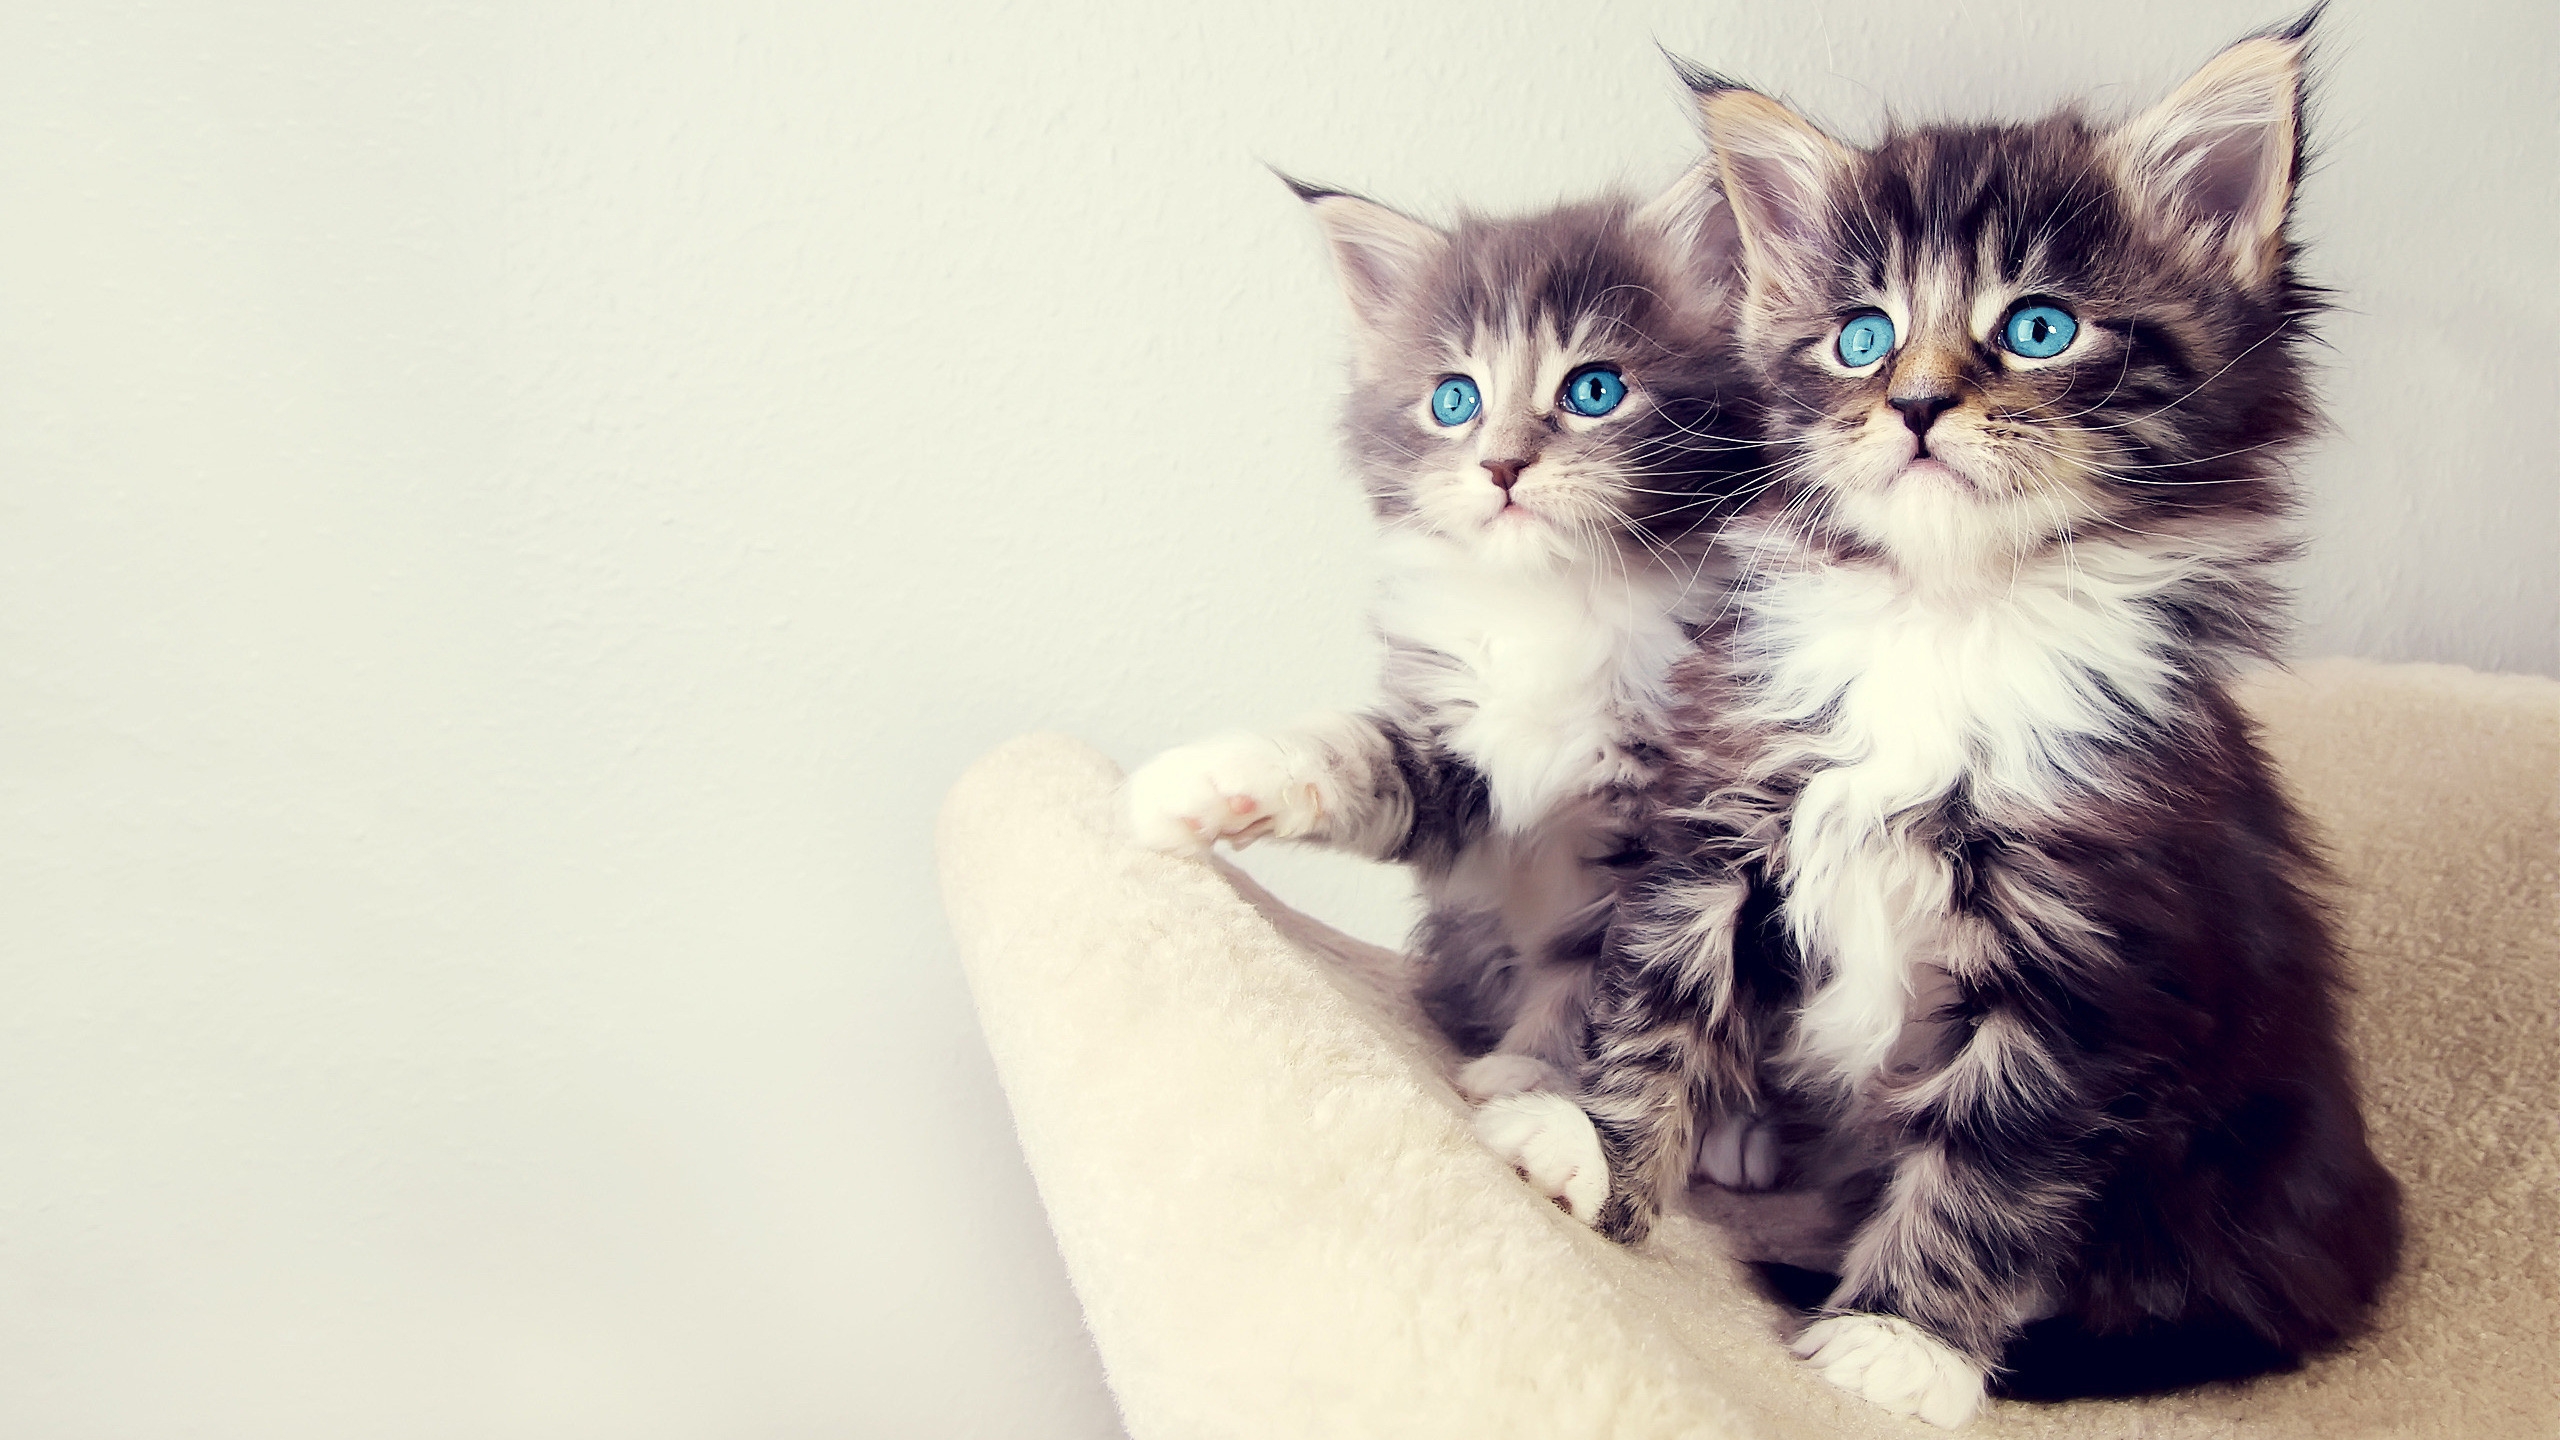 Gorgeous Kittens for 2560x1440 HDTV resolution